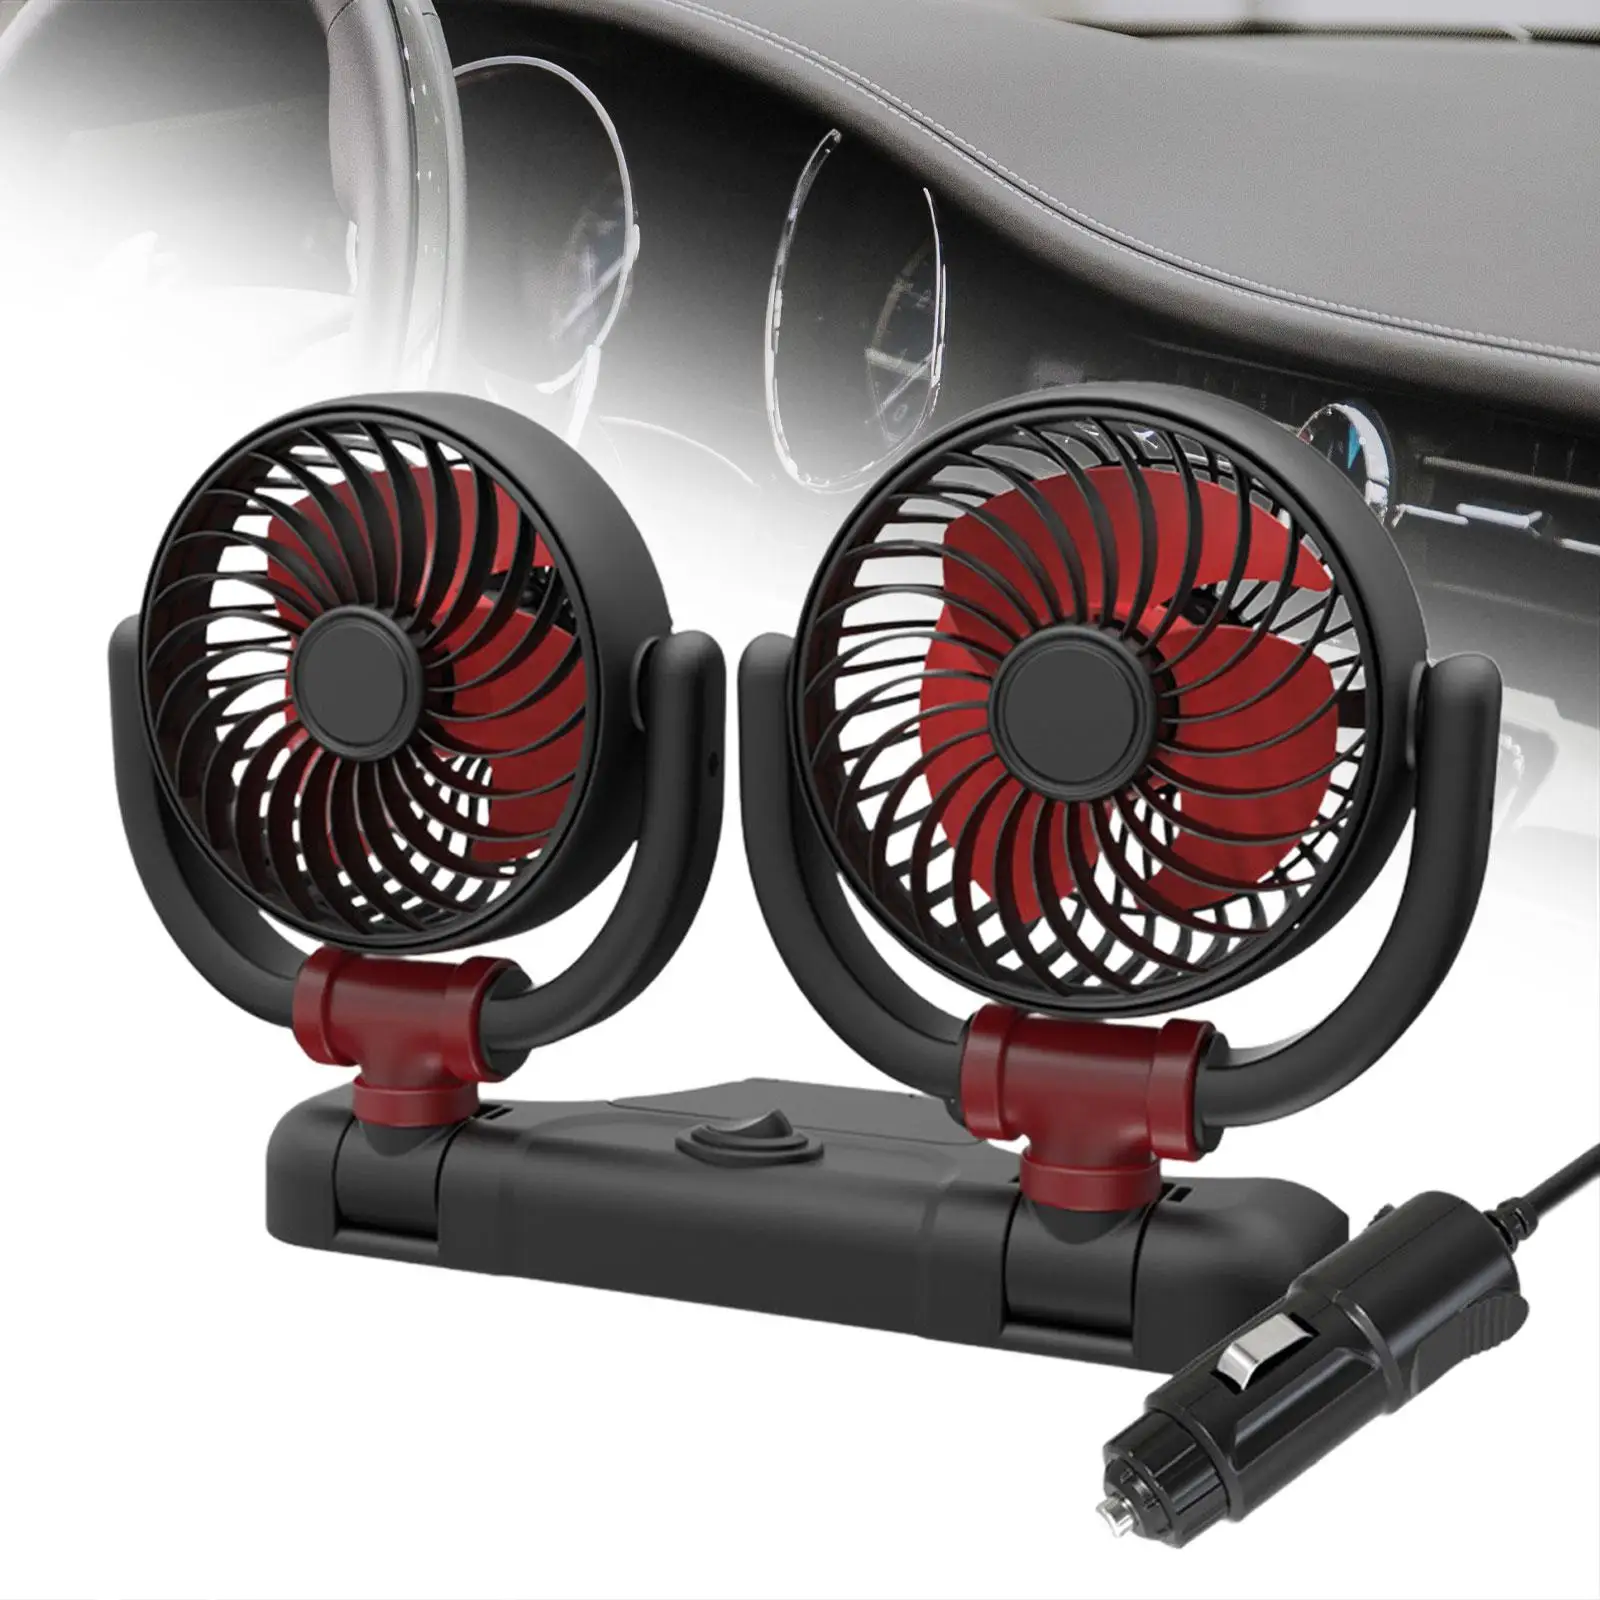 Dual Head Car Fan Portable Car Cooling Air Fan for Dashboard Home RV